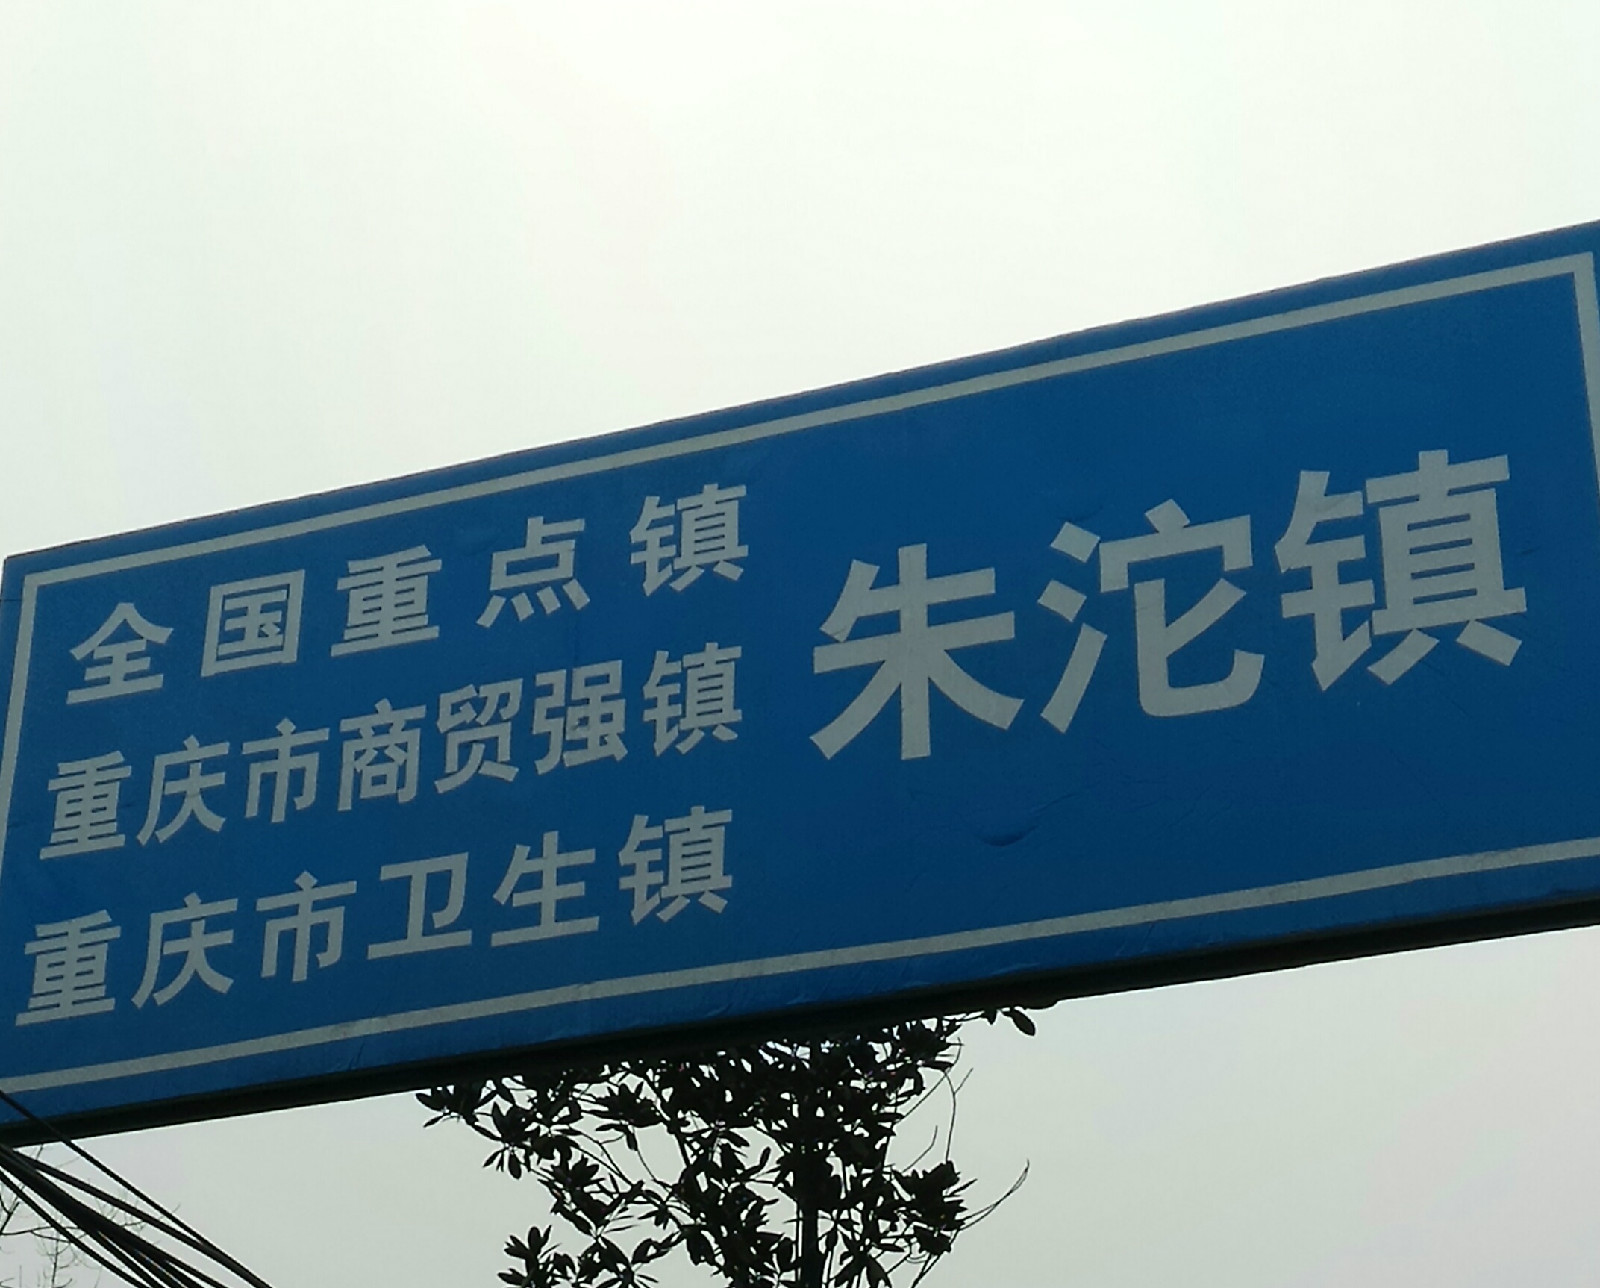 全國重點鎮、重慶市商貿強鎮